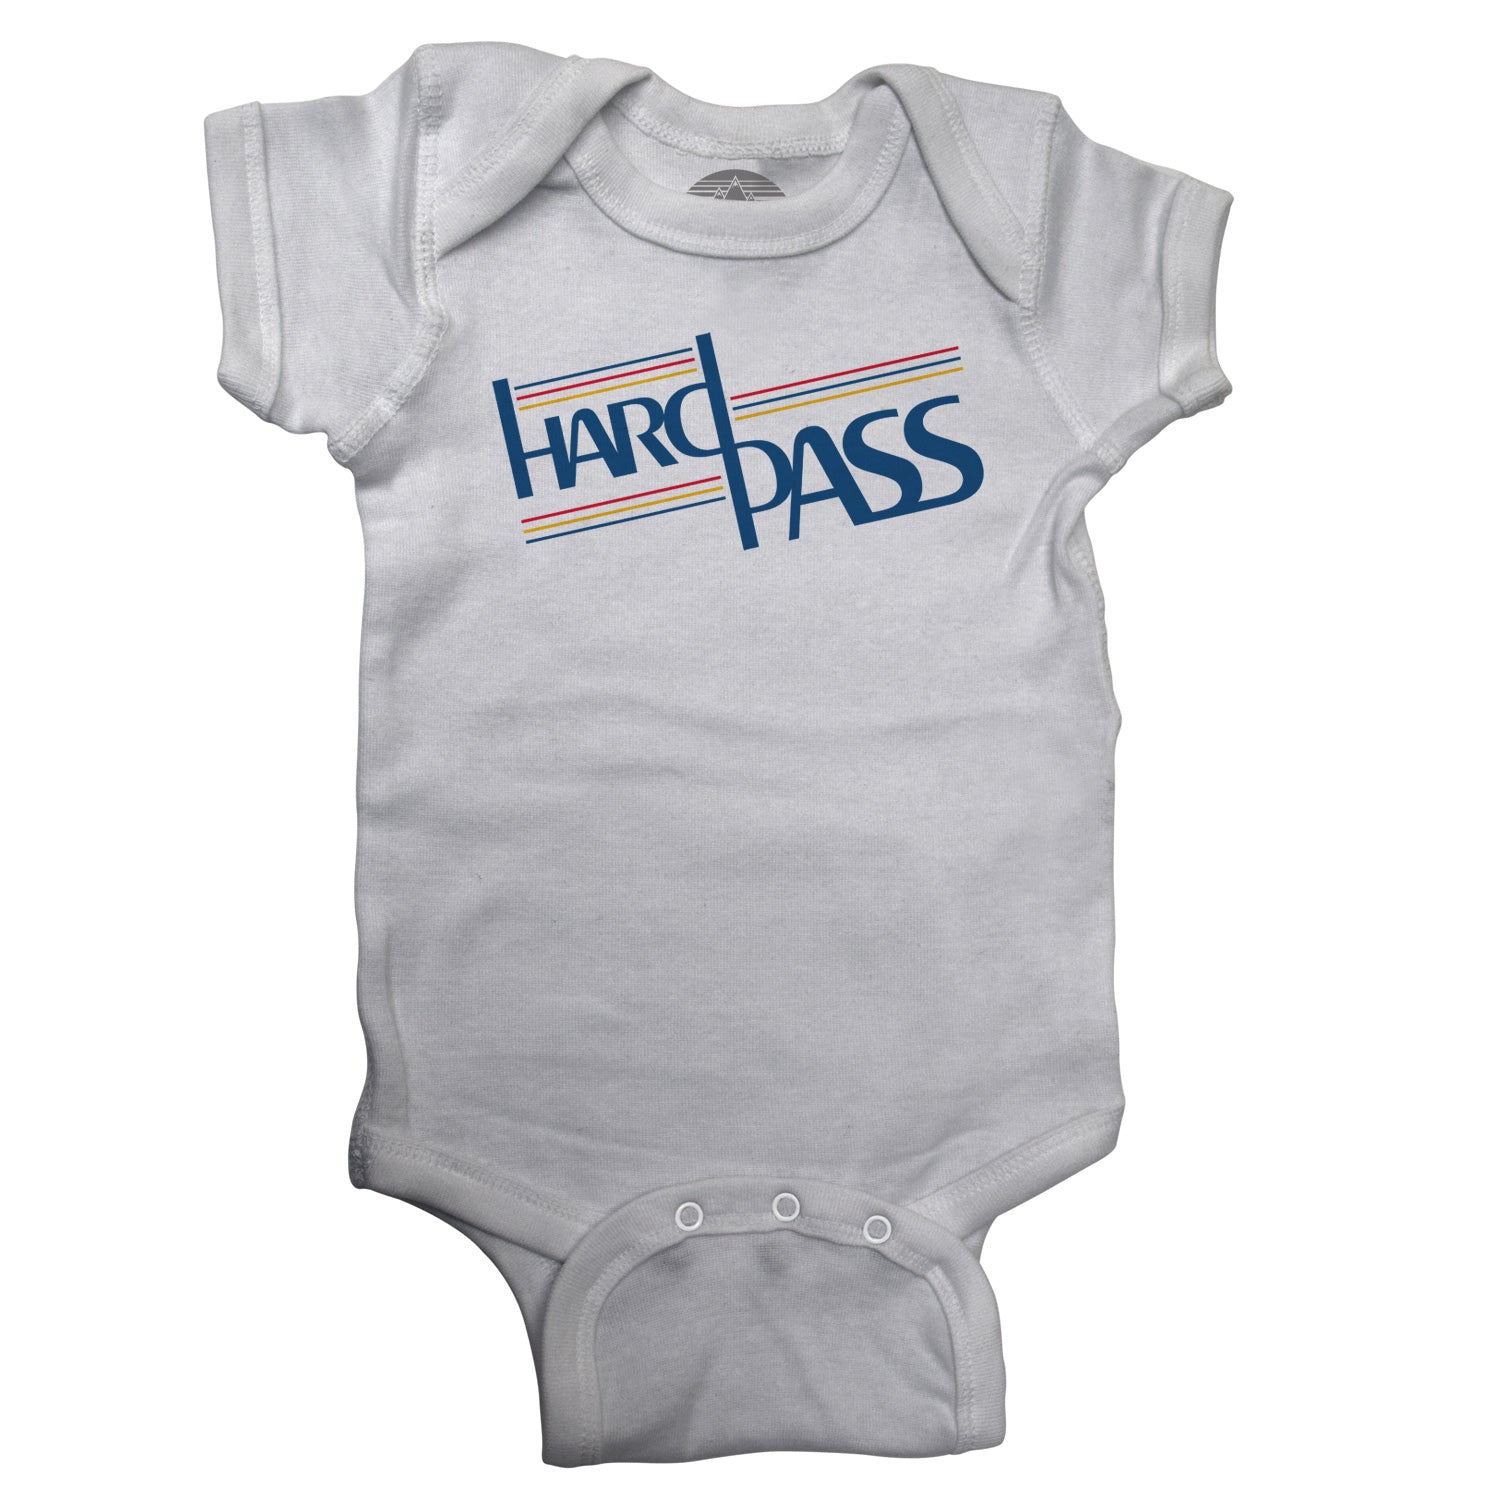 Hard Pass Infant Bodysuit - Unisex Fit